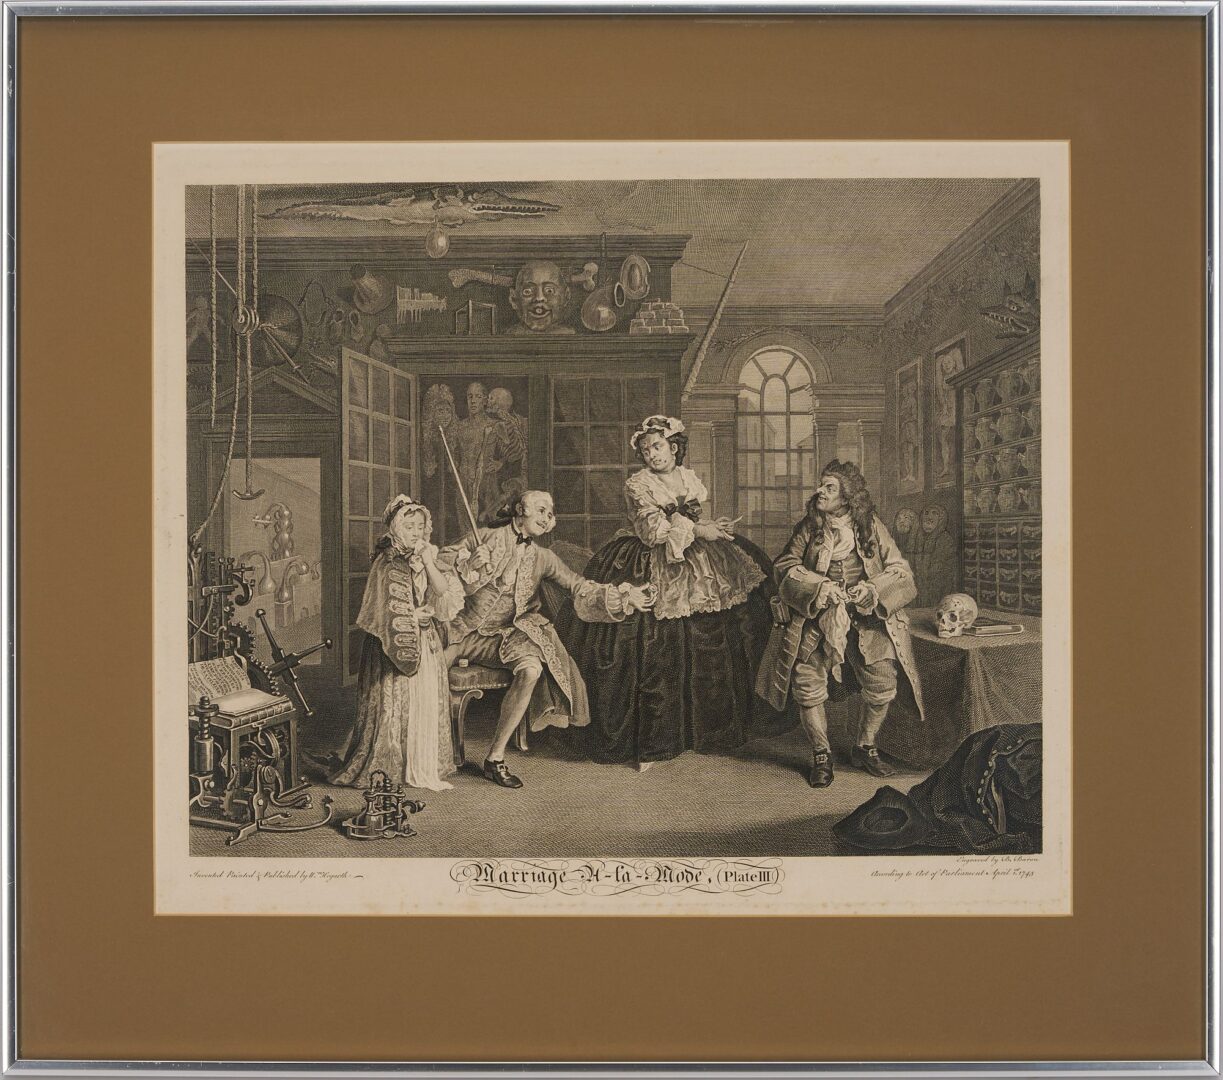 Lot 399: William Hogarth, Marriage a la Mode, 6 Engravings plus Self-Portrait